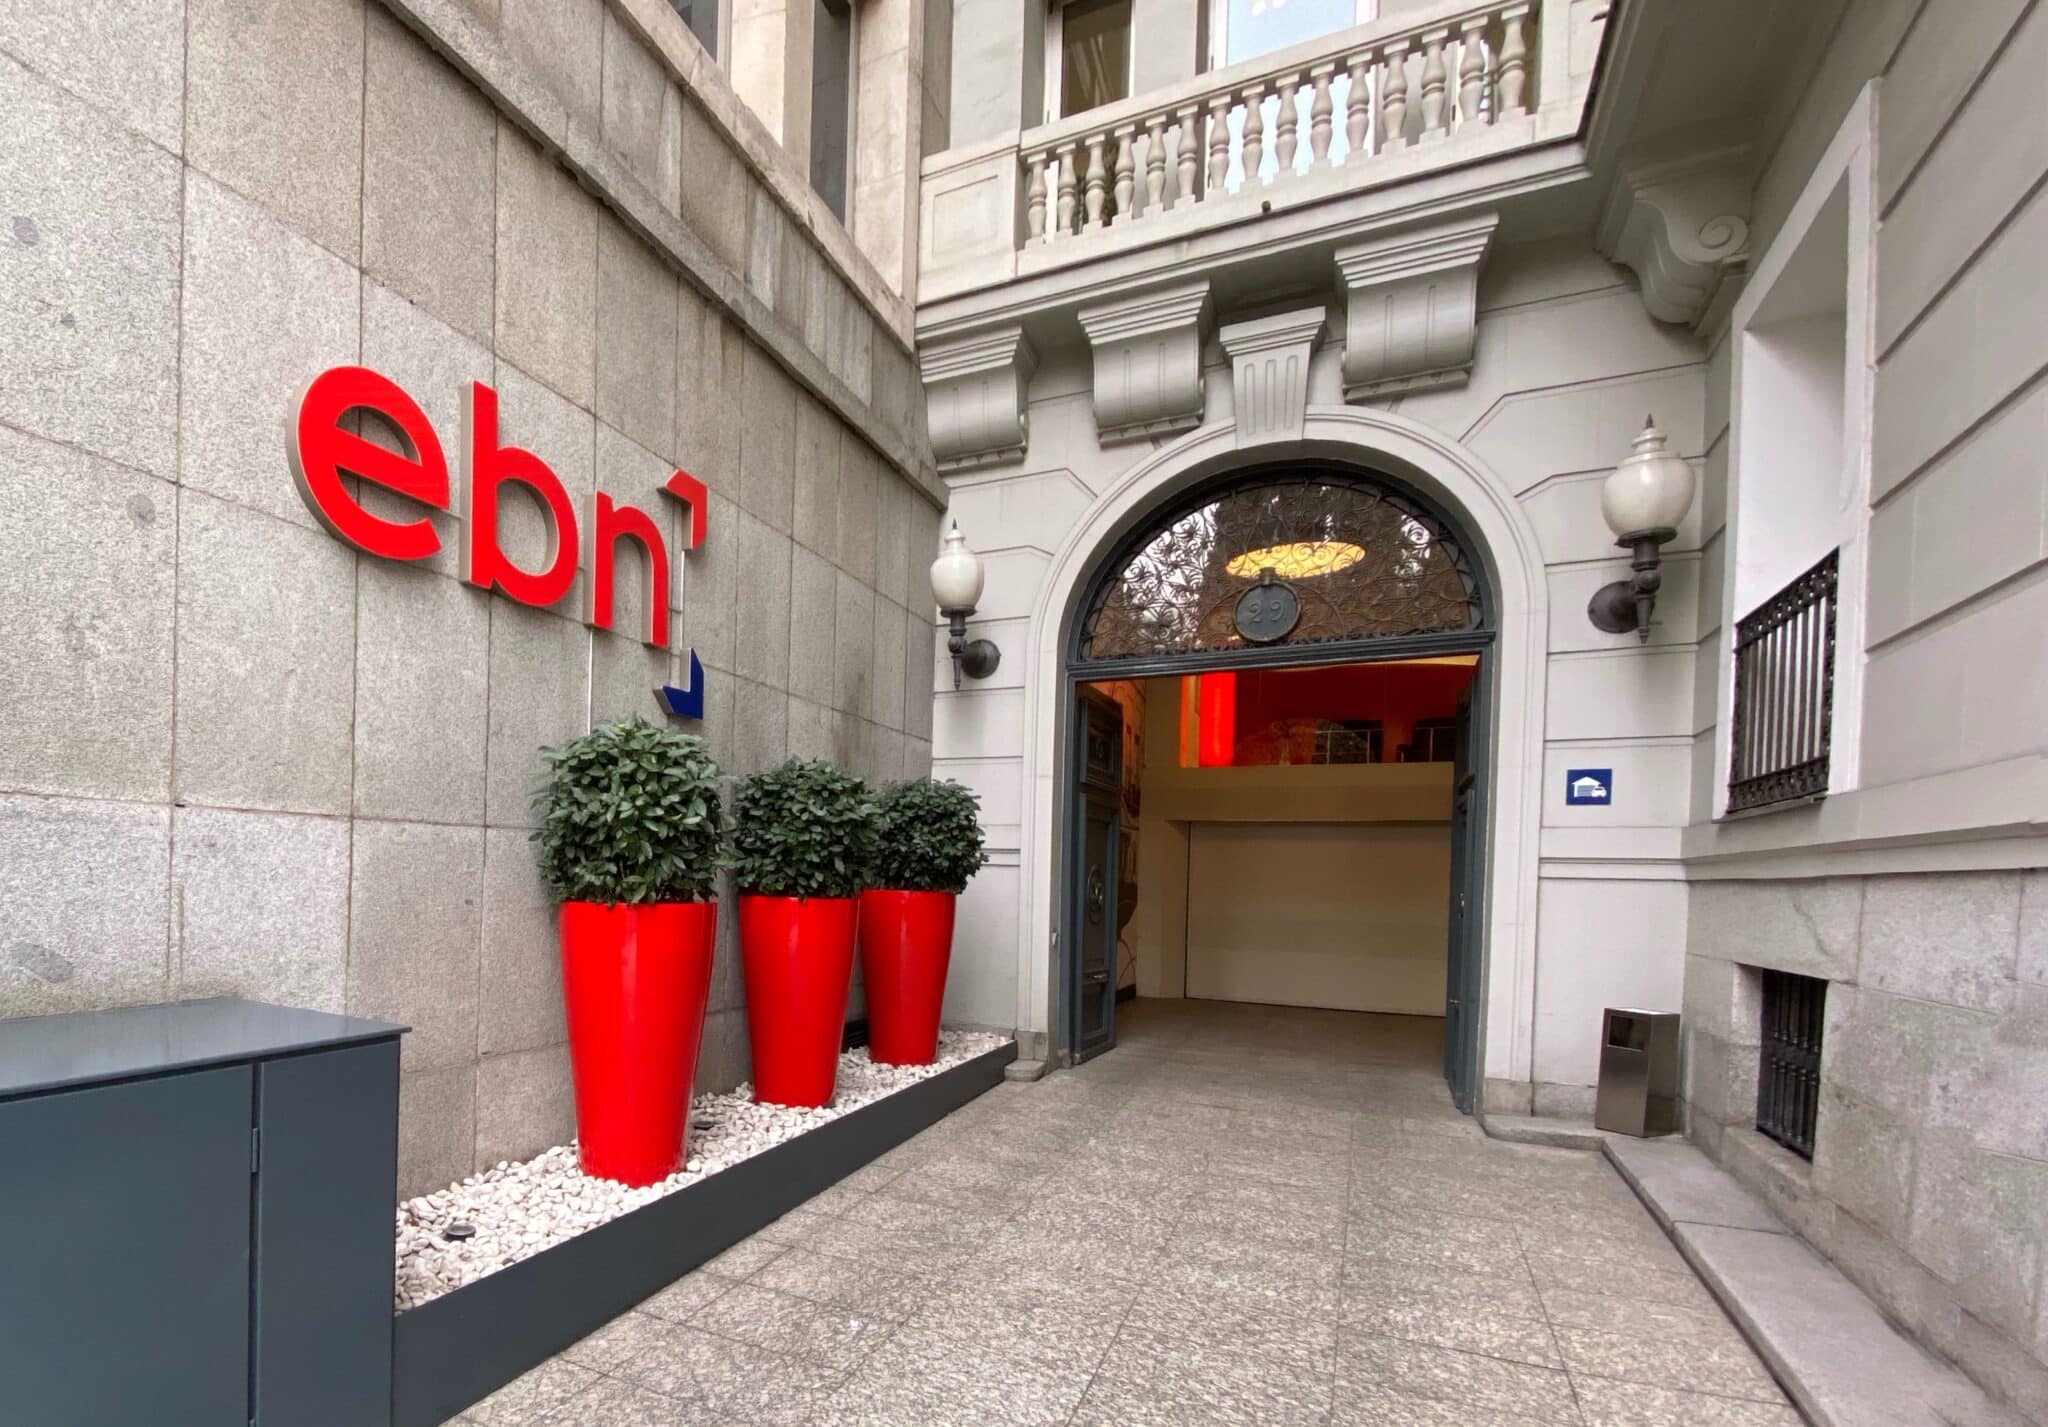 EBN Banco se convierte en el banco español que más remunera al aumentar al 3% el interés de su cuenta